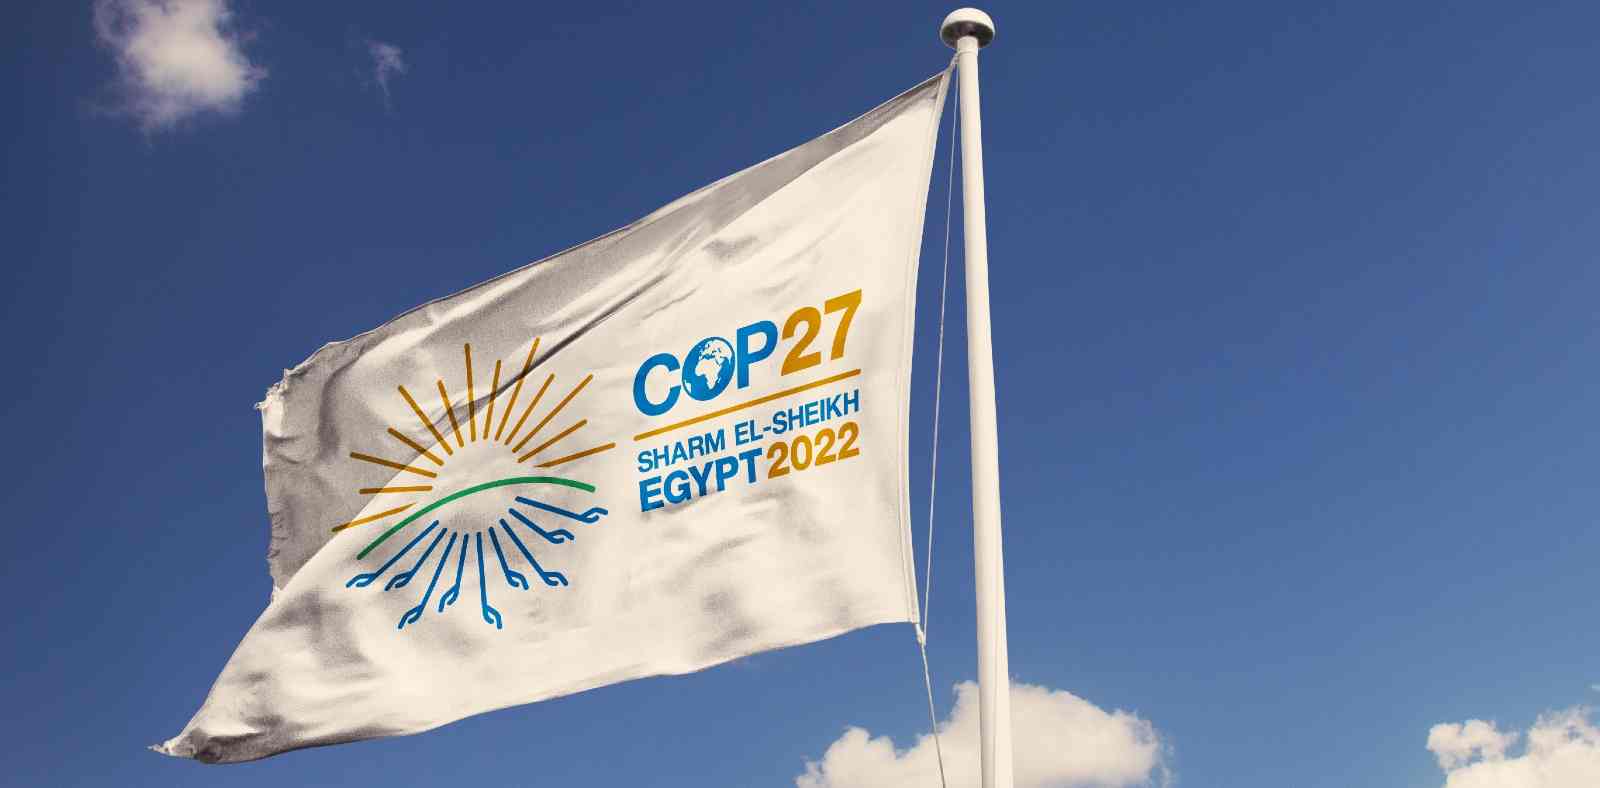 11cop 27 conferenza sul clima nazioni unite